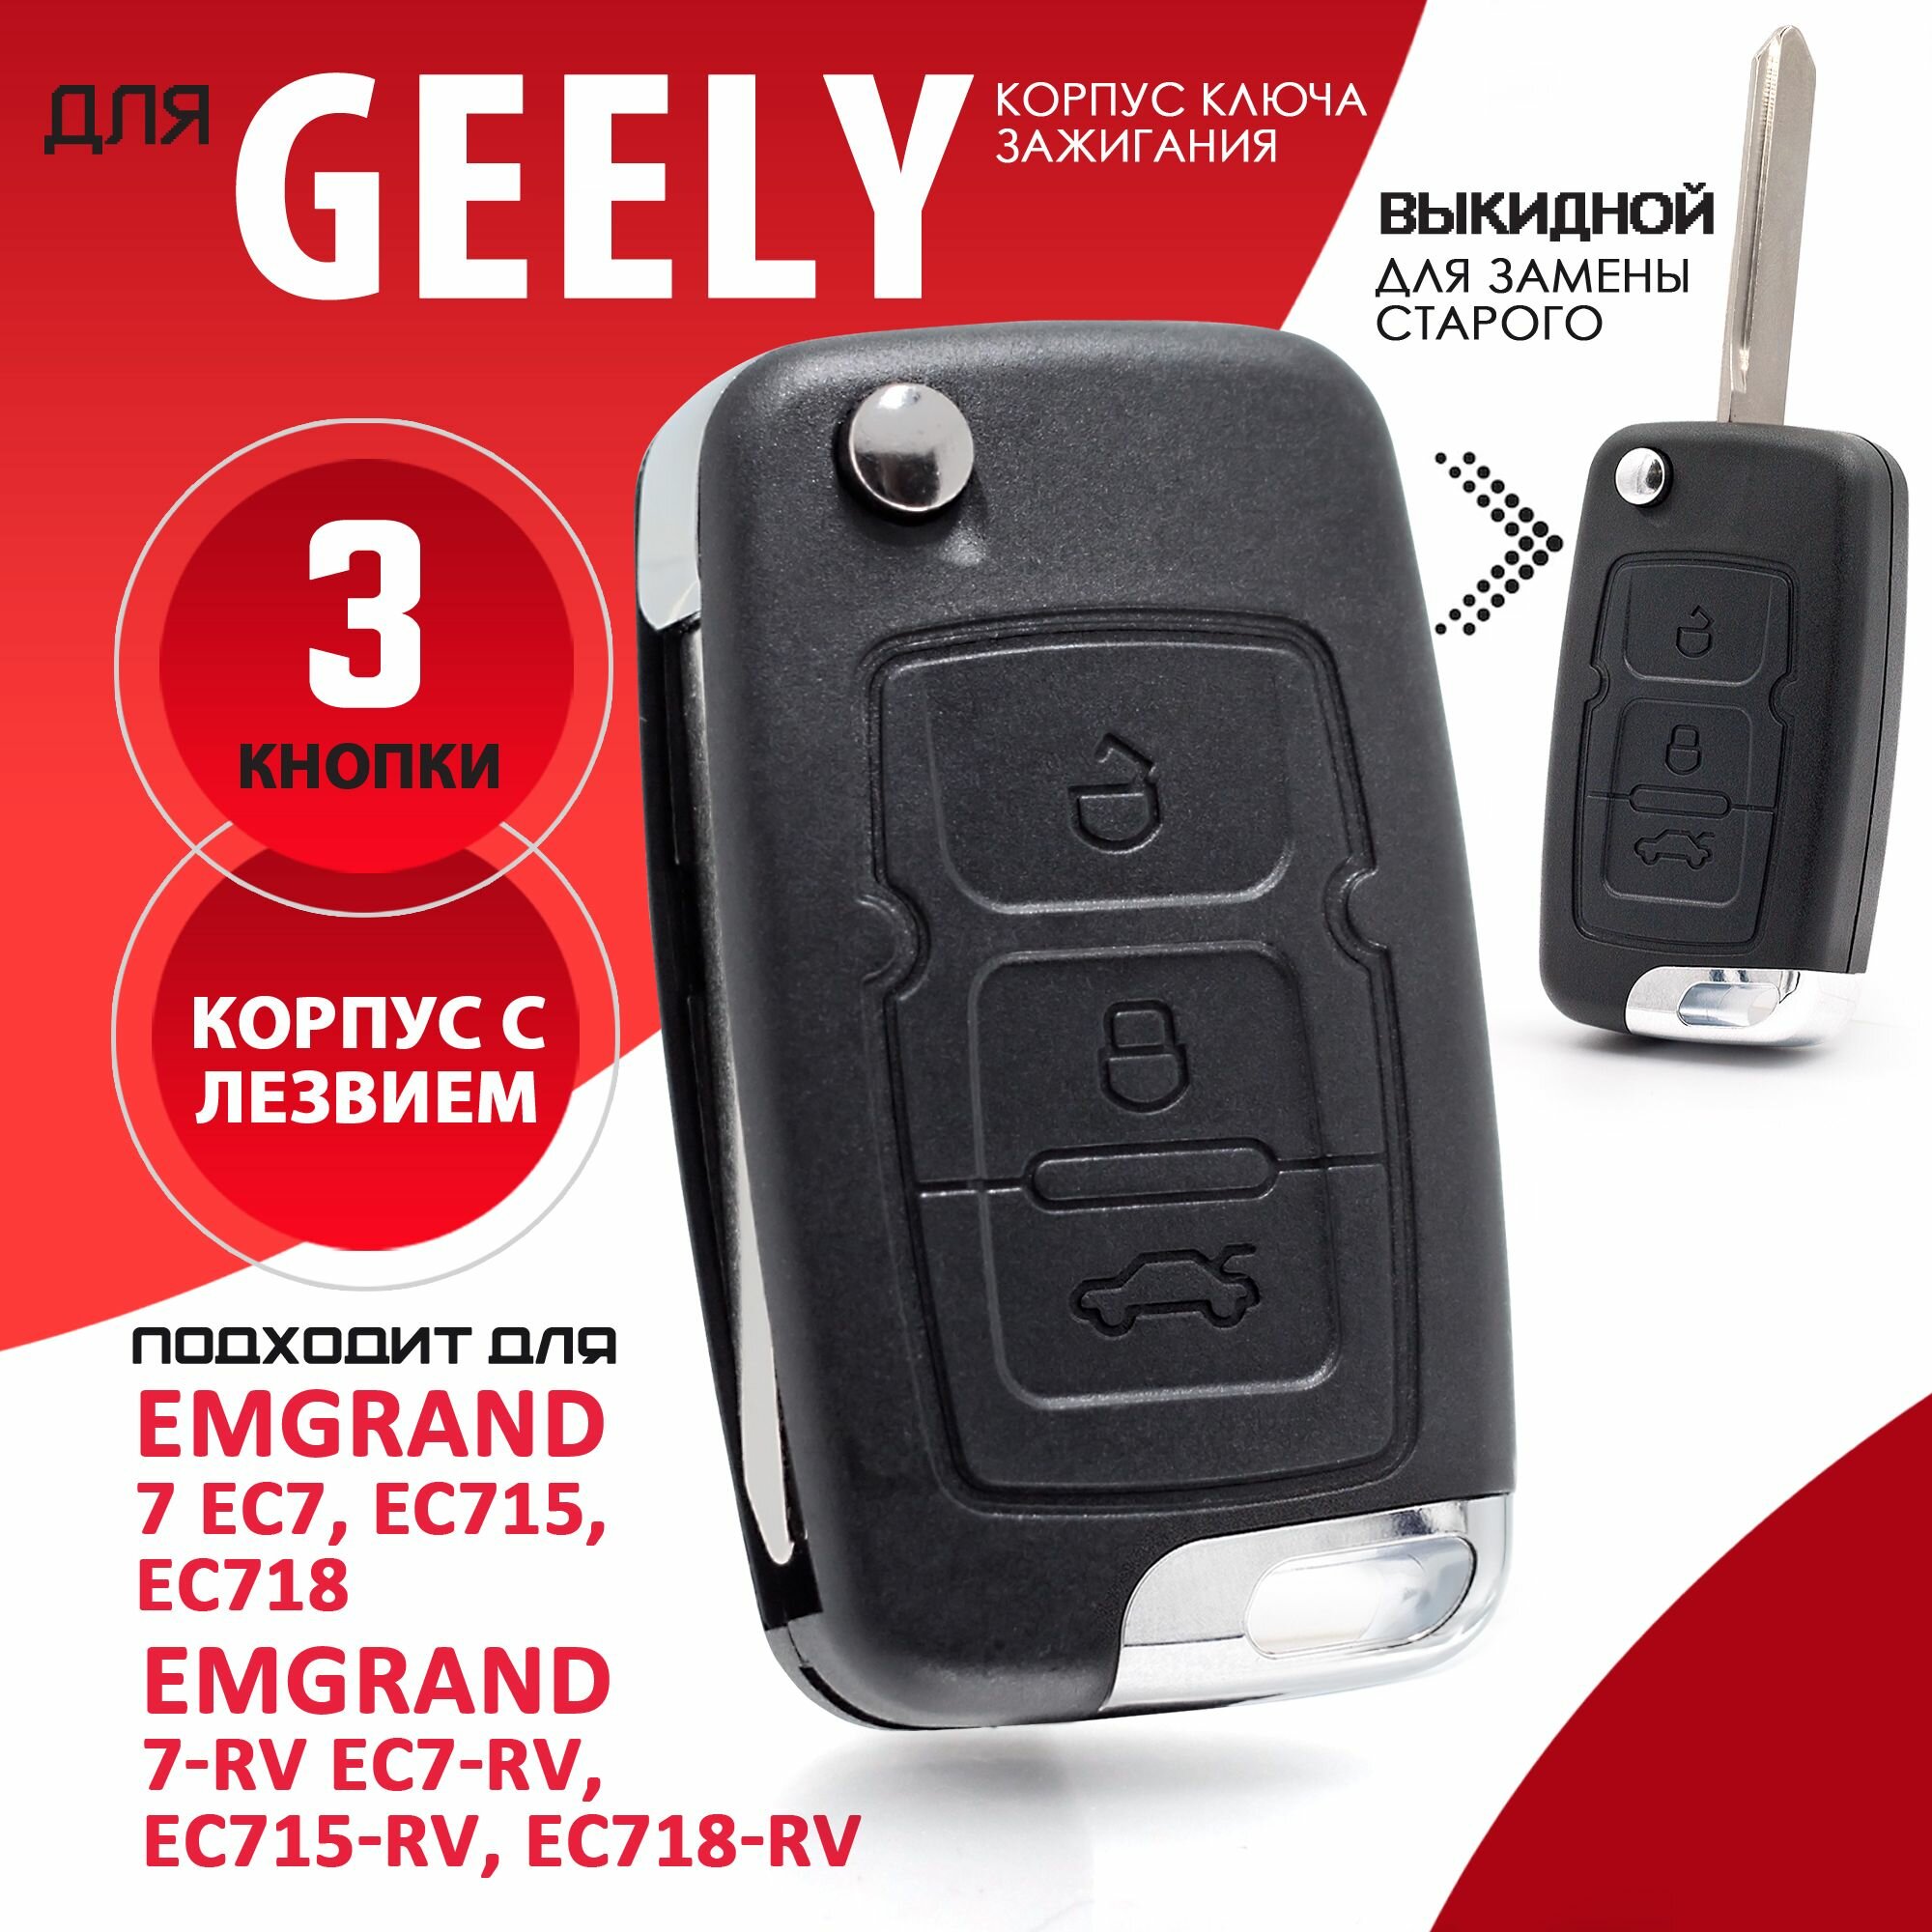 Корпус ключа зажигания GeeLy 3-х кнопочный